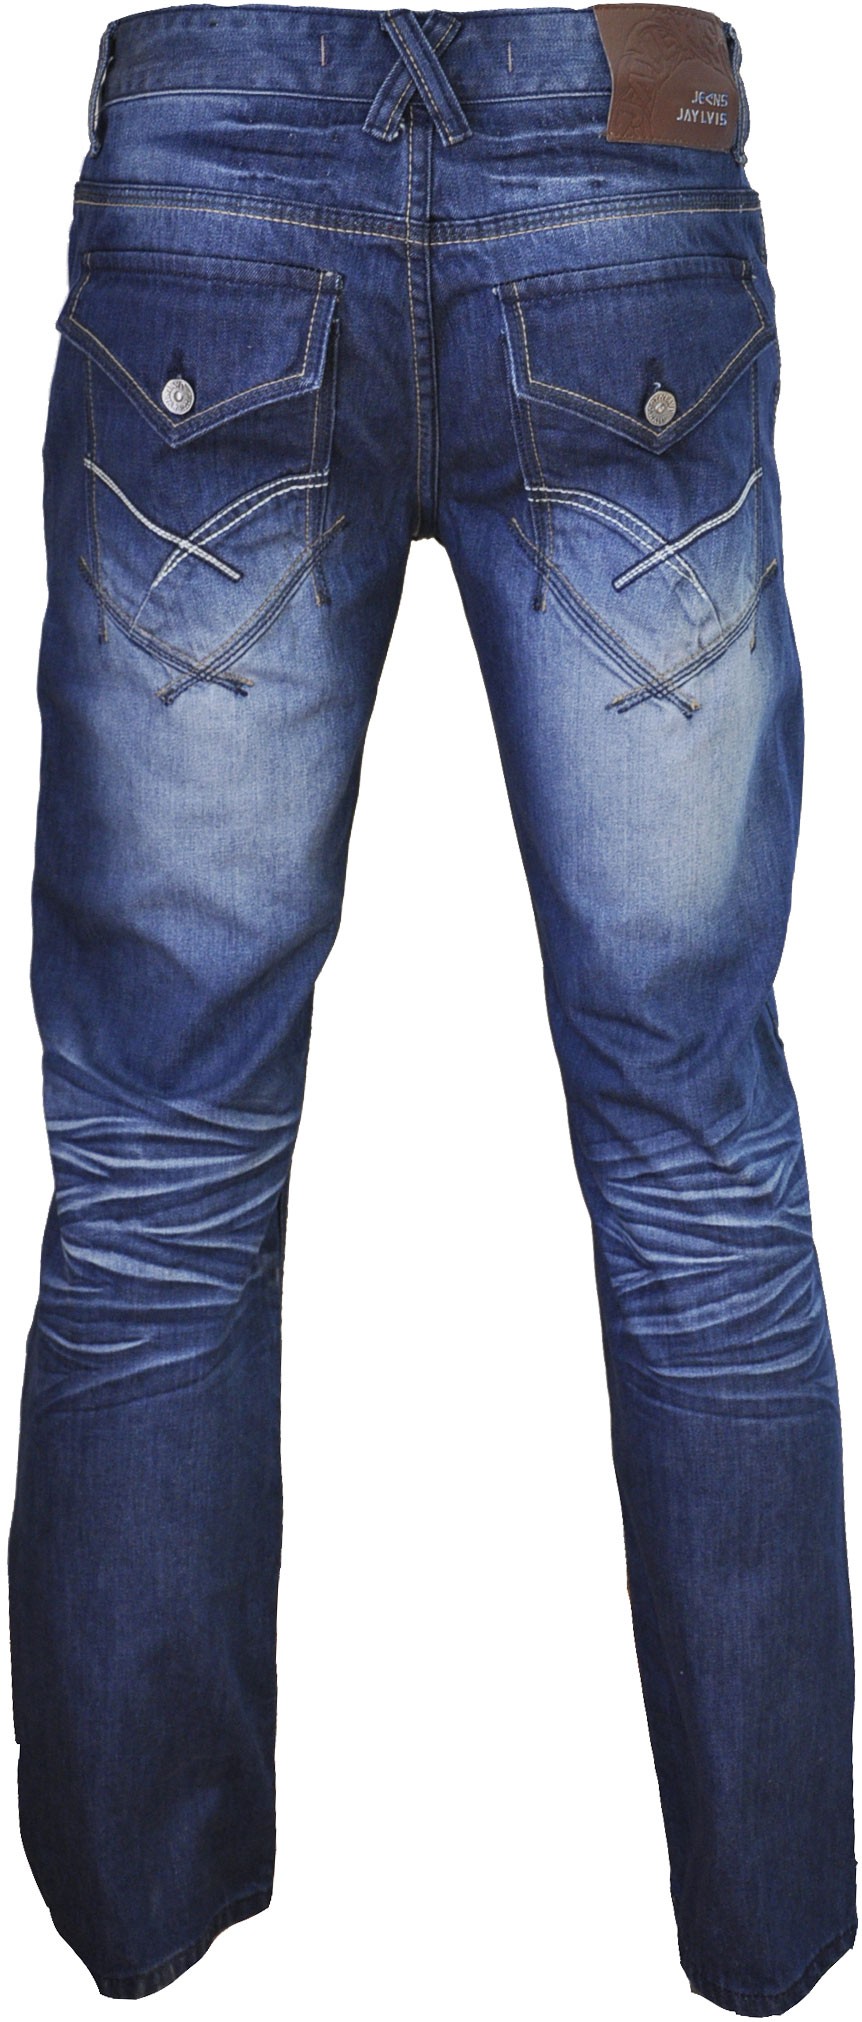 Le test de nouveaux jeans sur jean-femme.co